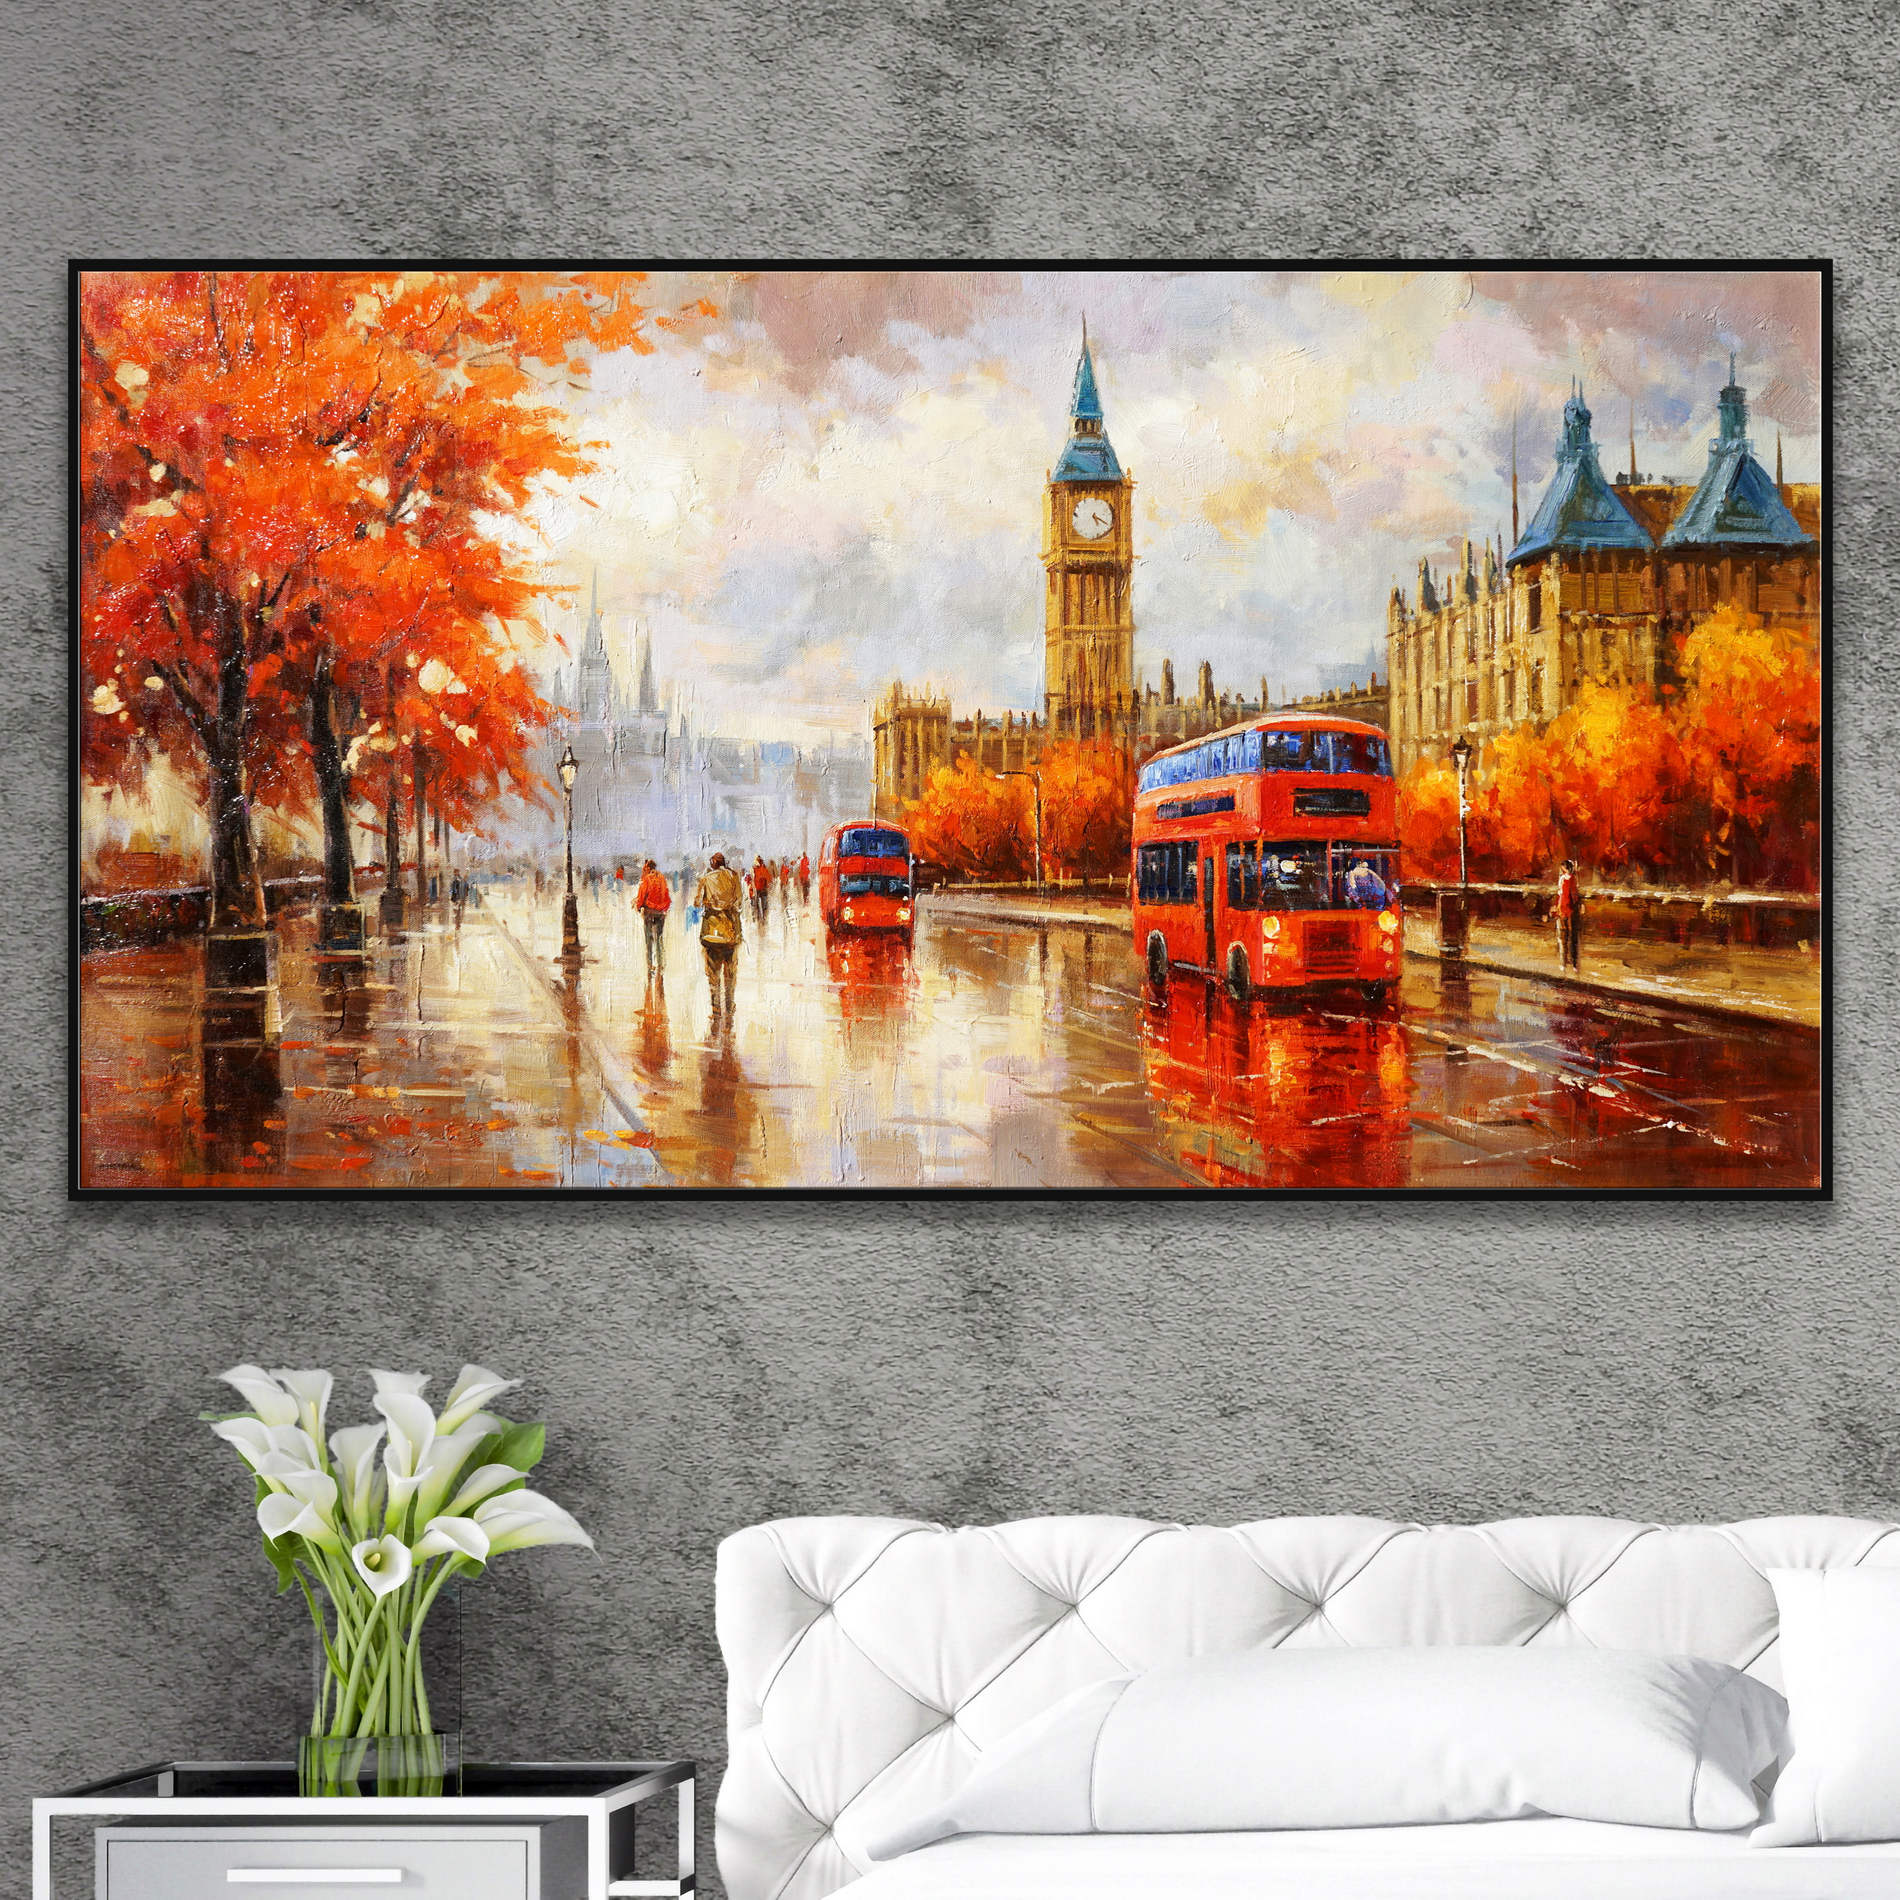 Dipinto di una scena autunnale a Londra con Big Ben e bus rossi